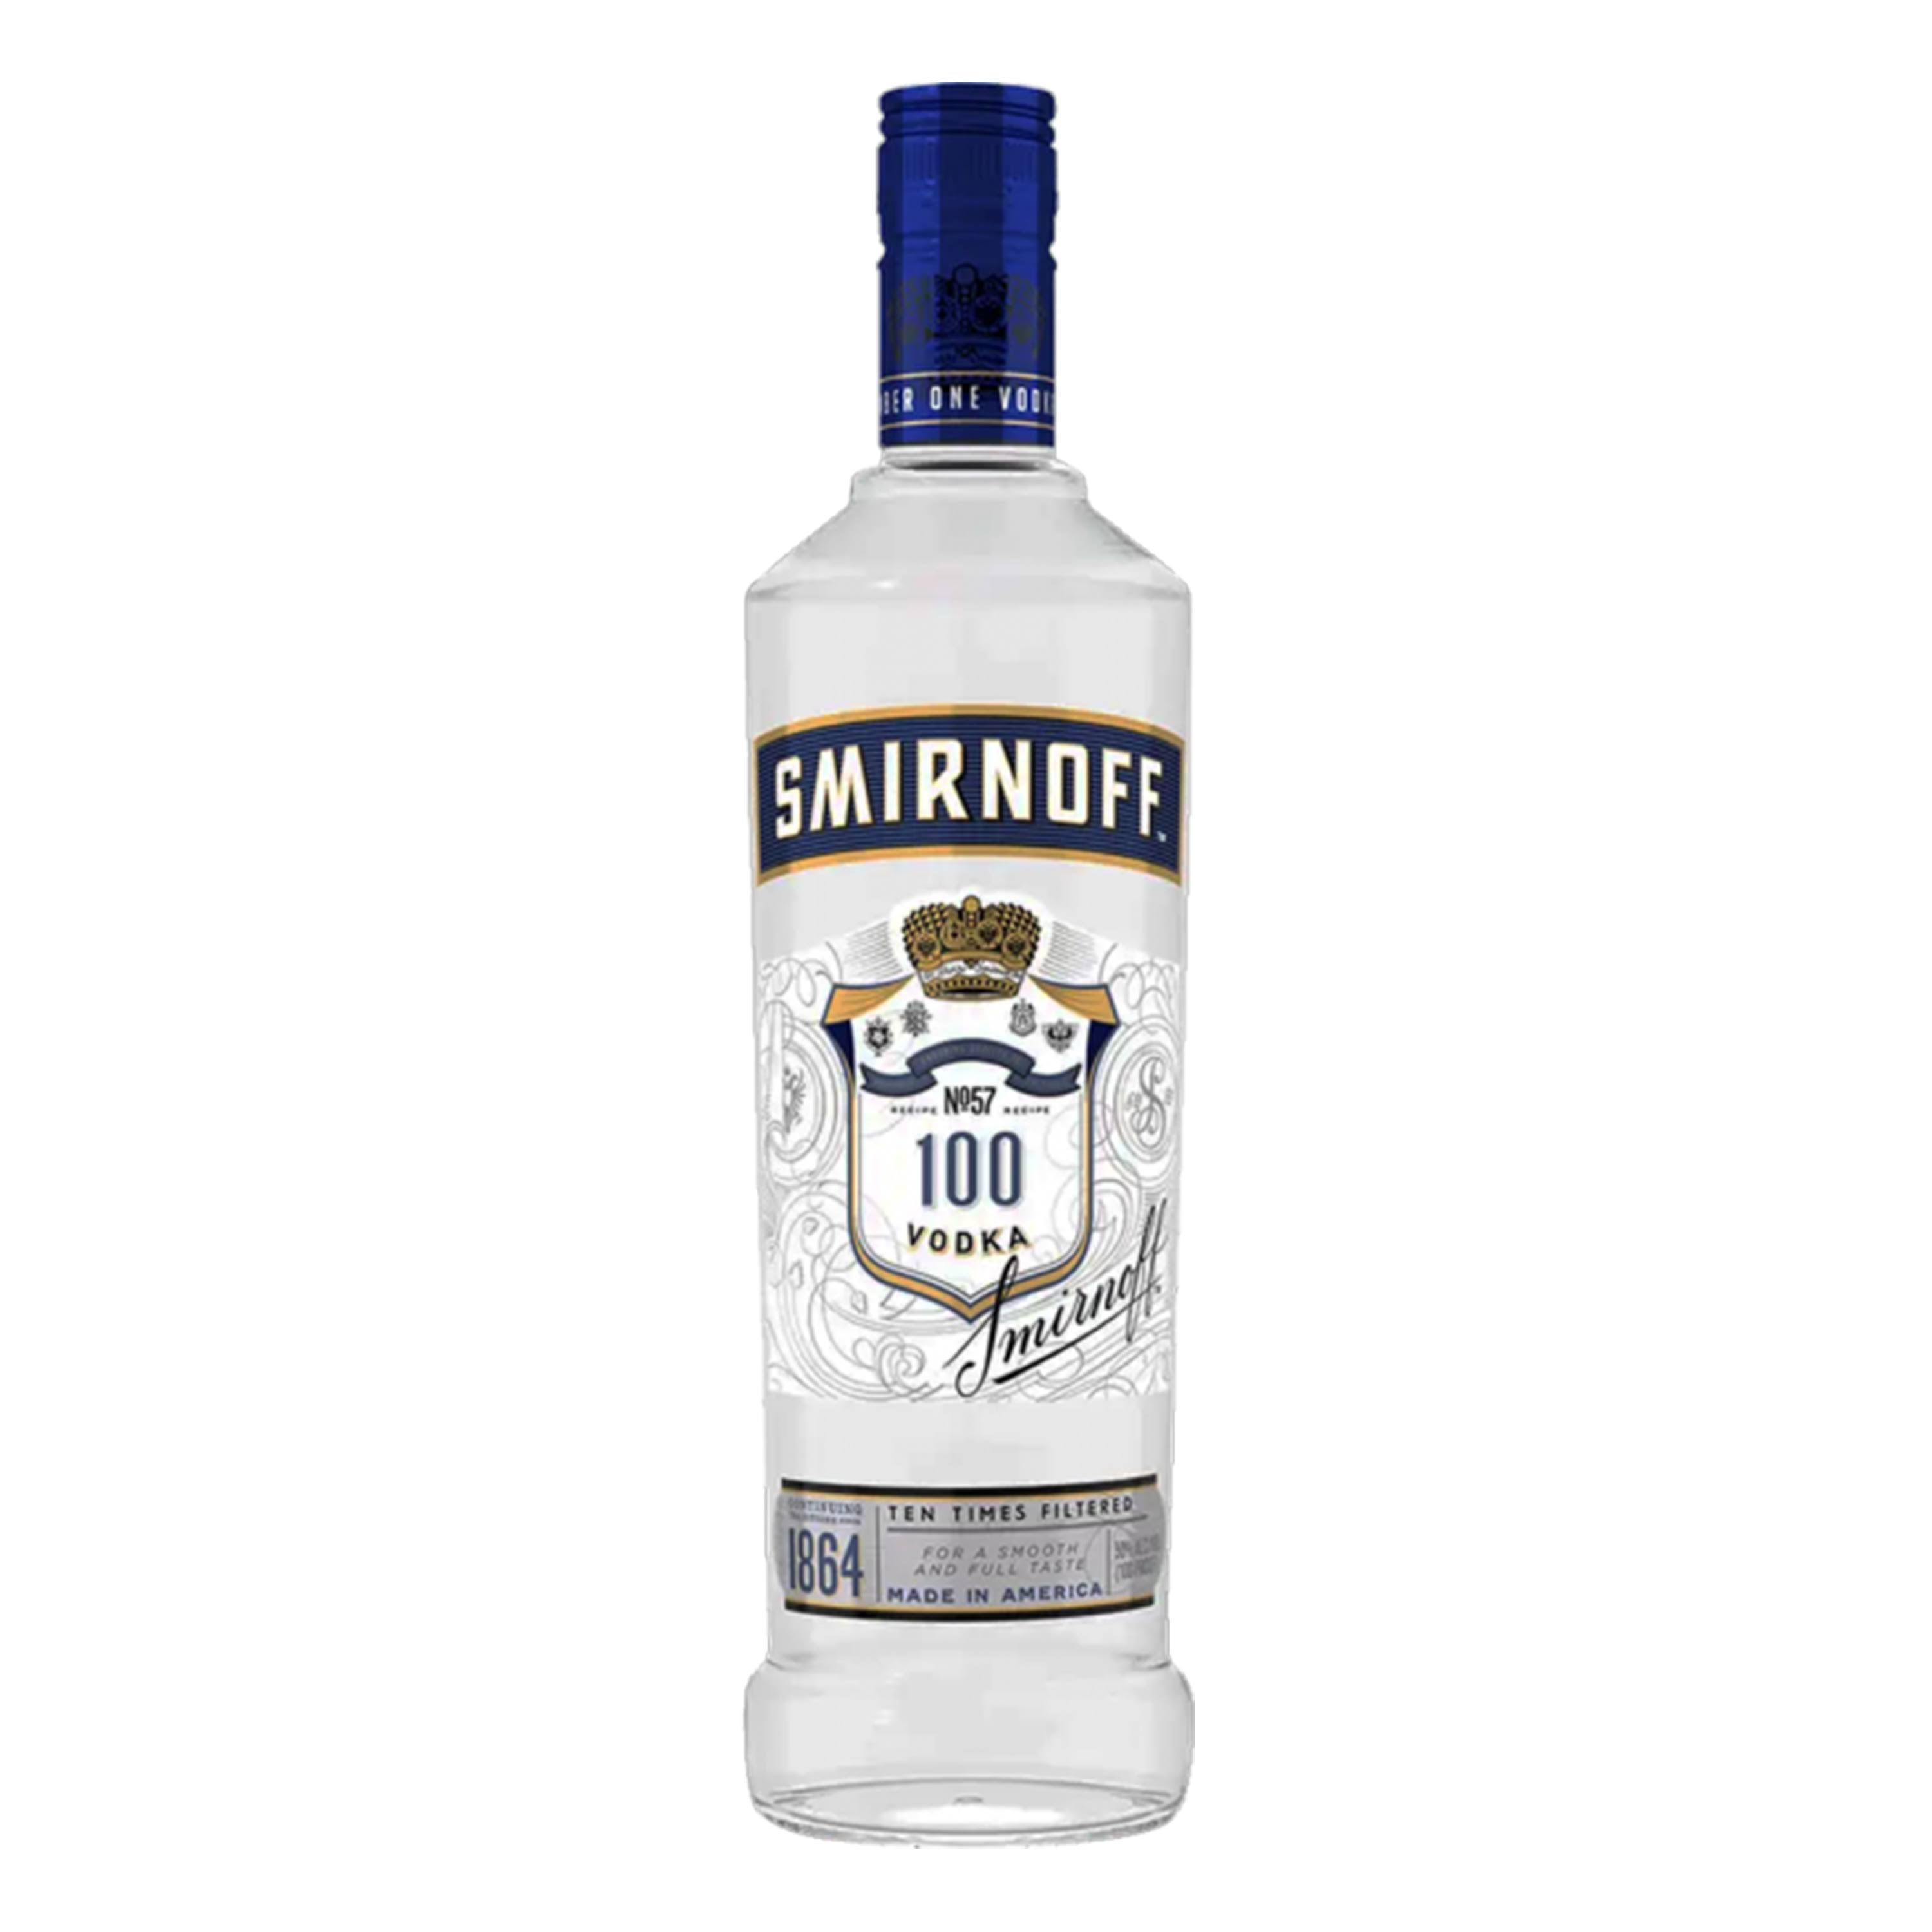 Smirnoff No 57 100 Proof Vodka